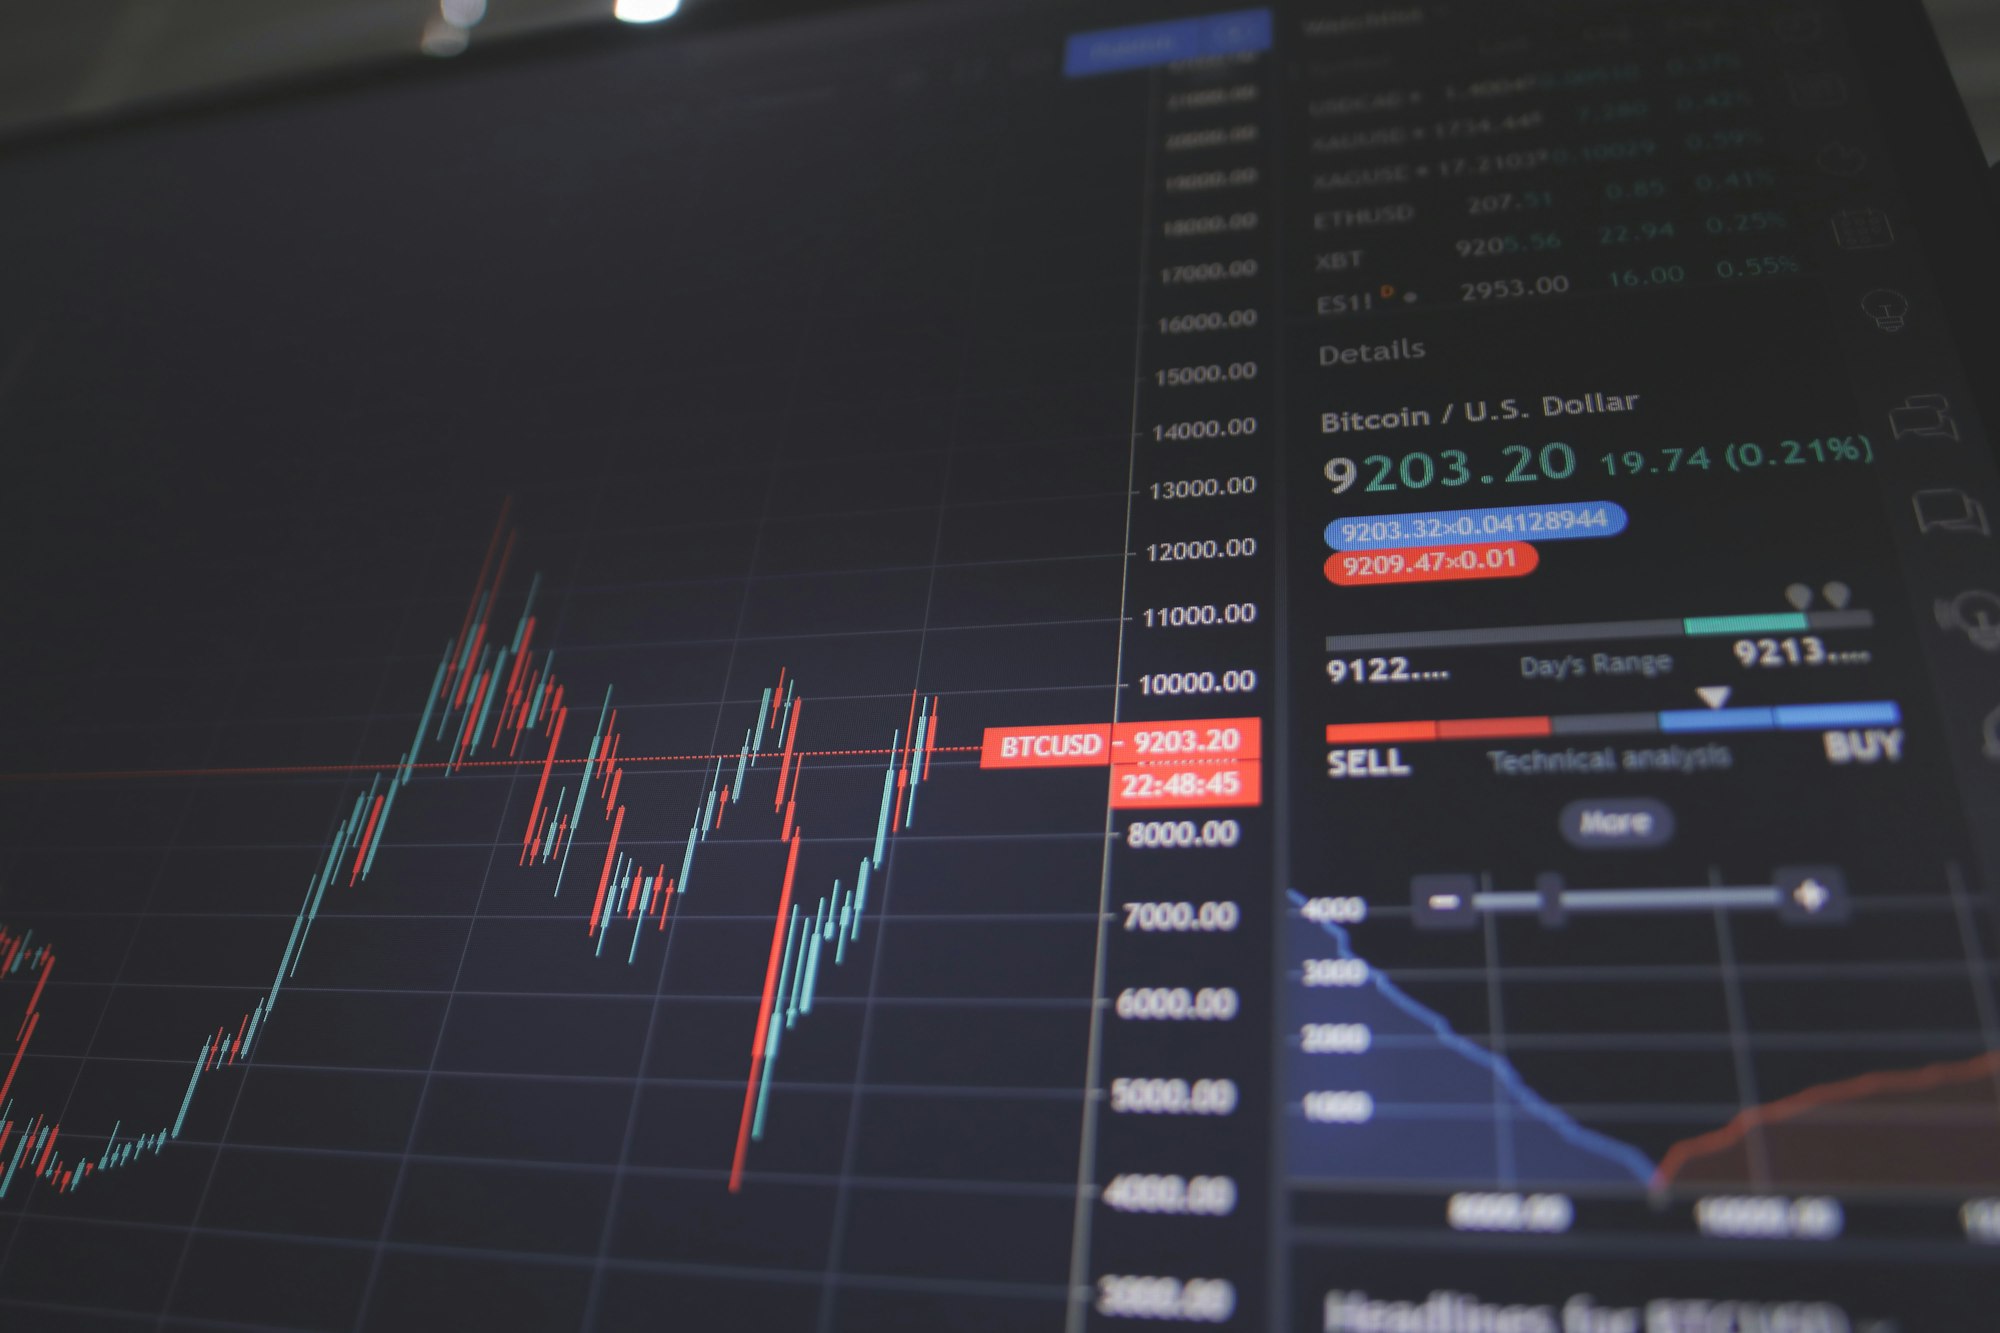 Belajar Forex: Panduan Menarik untuk Pemula - Memahami Pasar Forex dan Cara Memulai Trading